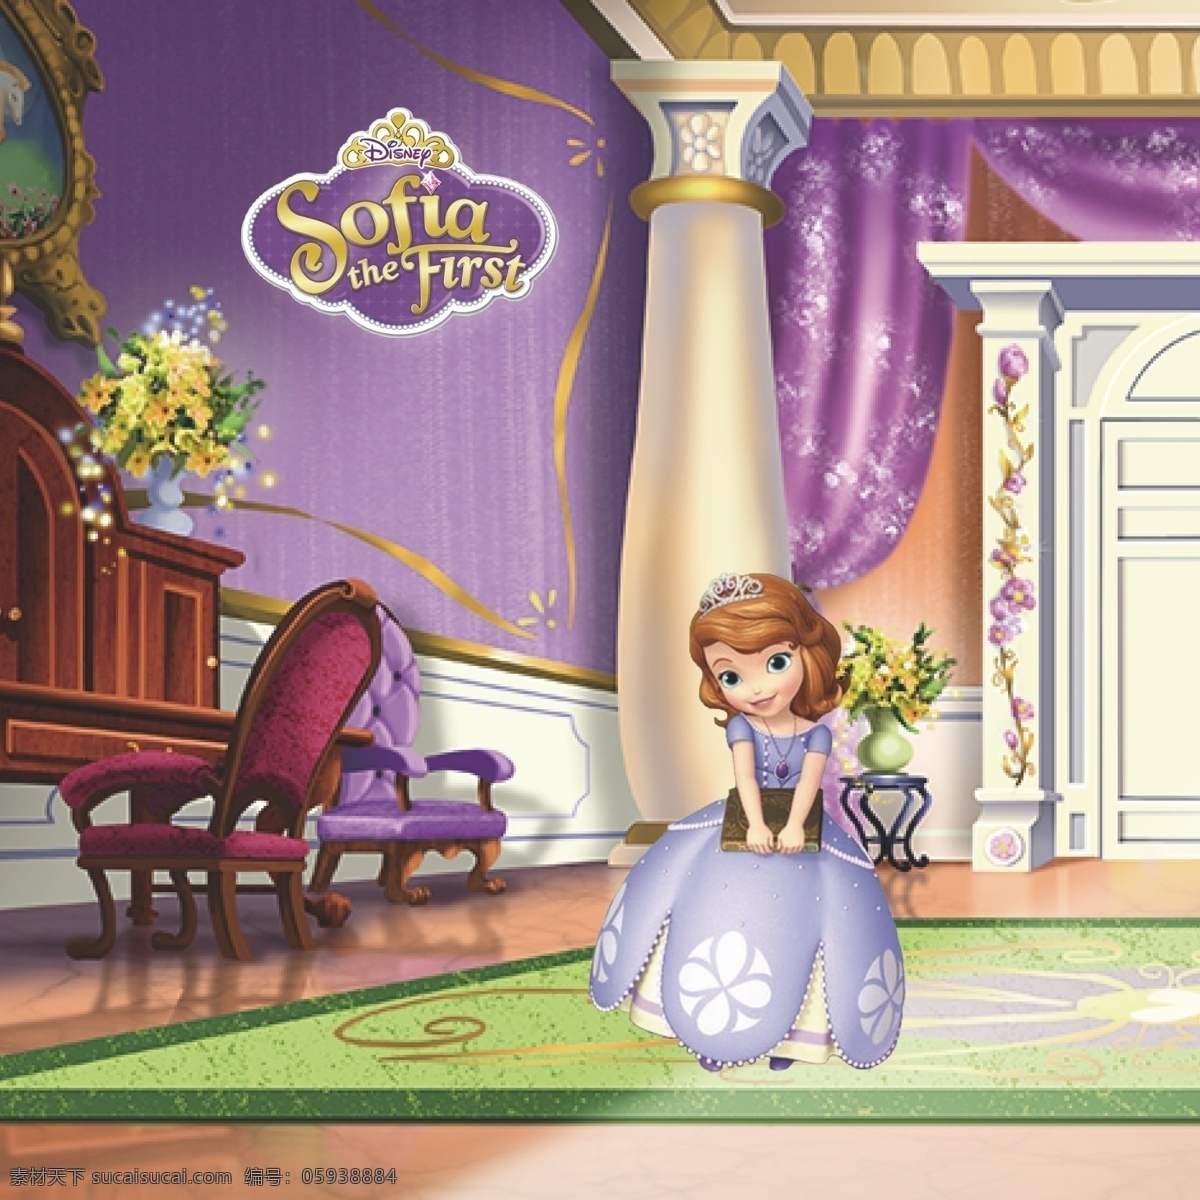 苏菲亚公主 小公主苏菲亚 索菲亚公主 宫殿 书本 索菲亚标志 索菲亚系列 动漫动画 动漫人物